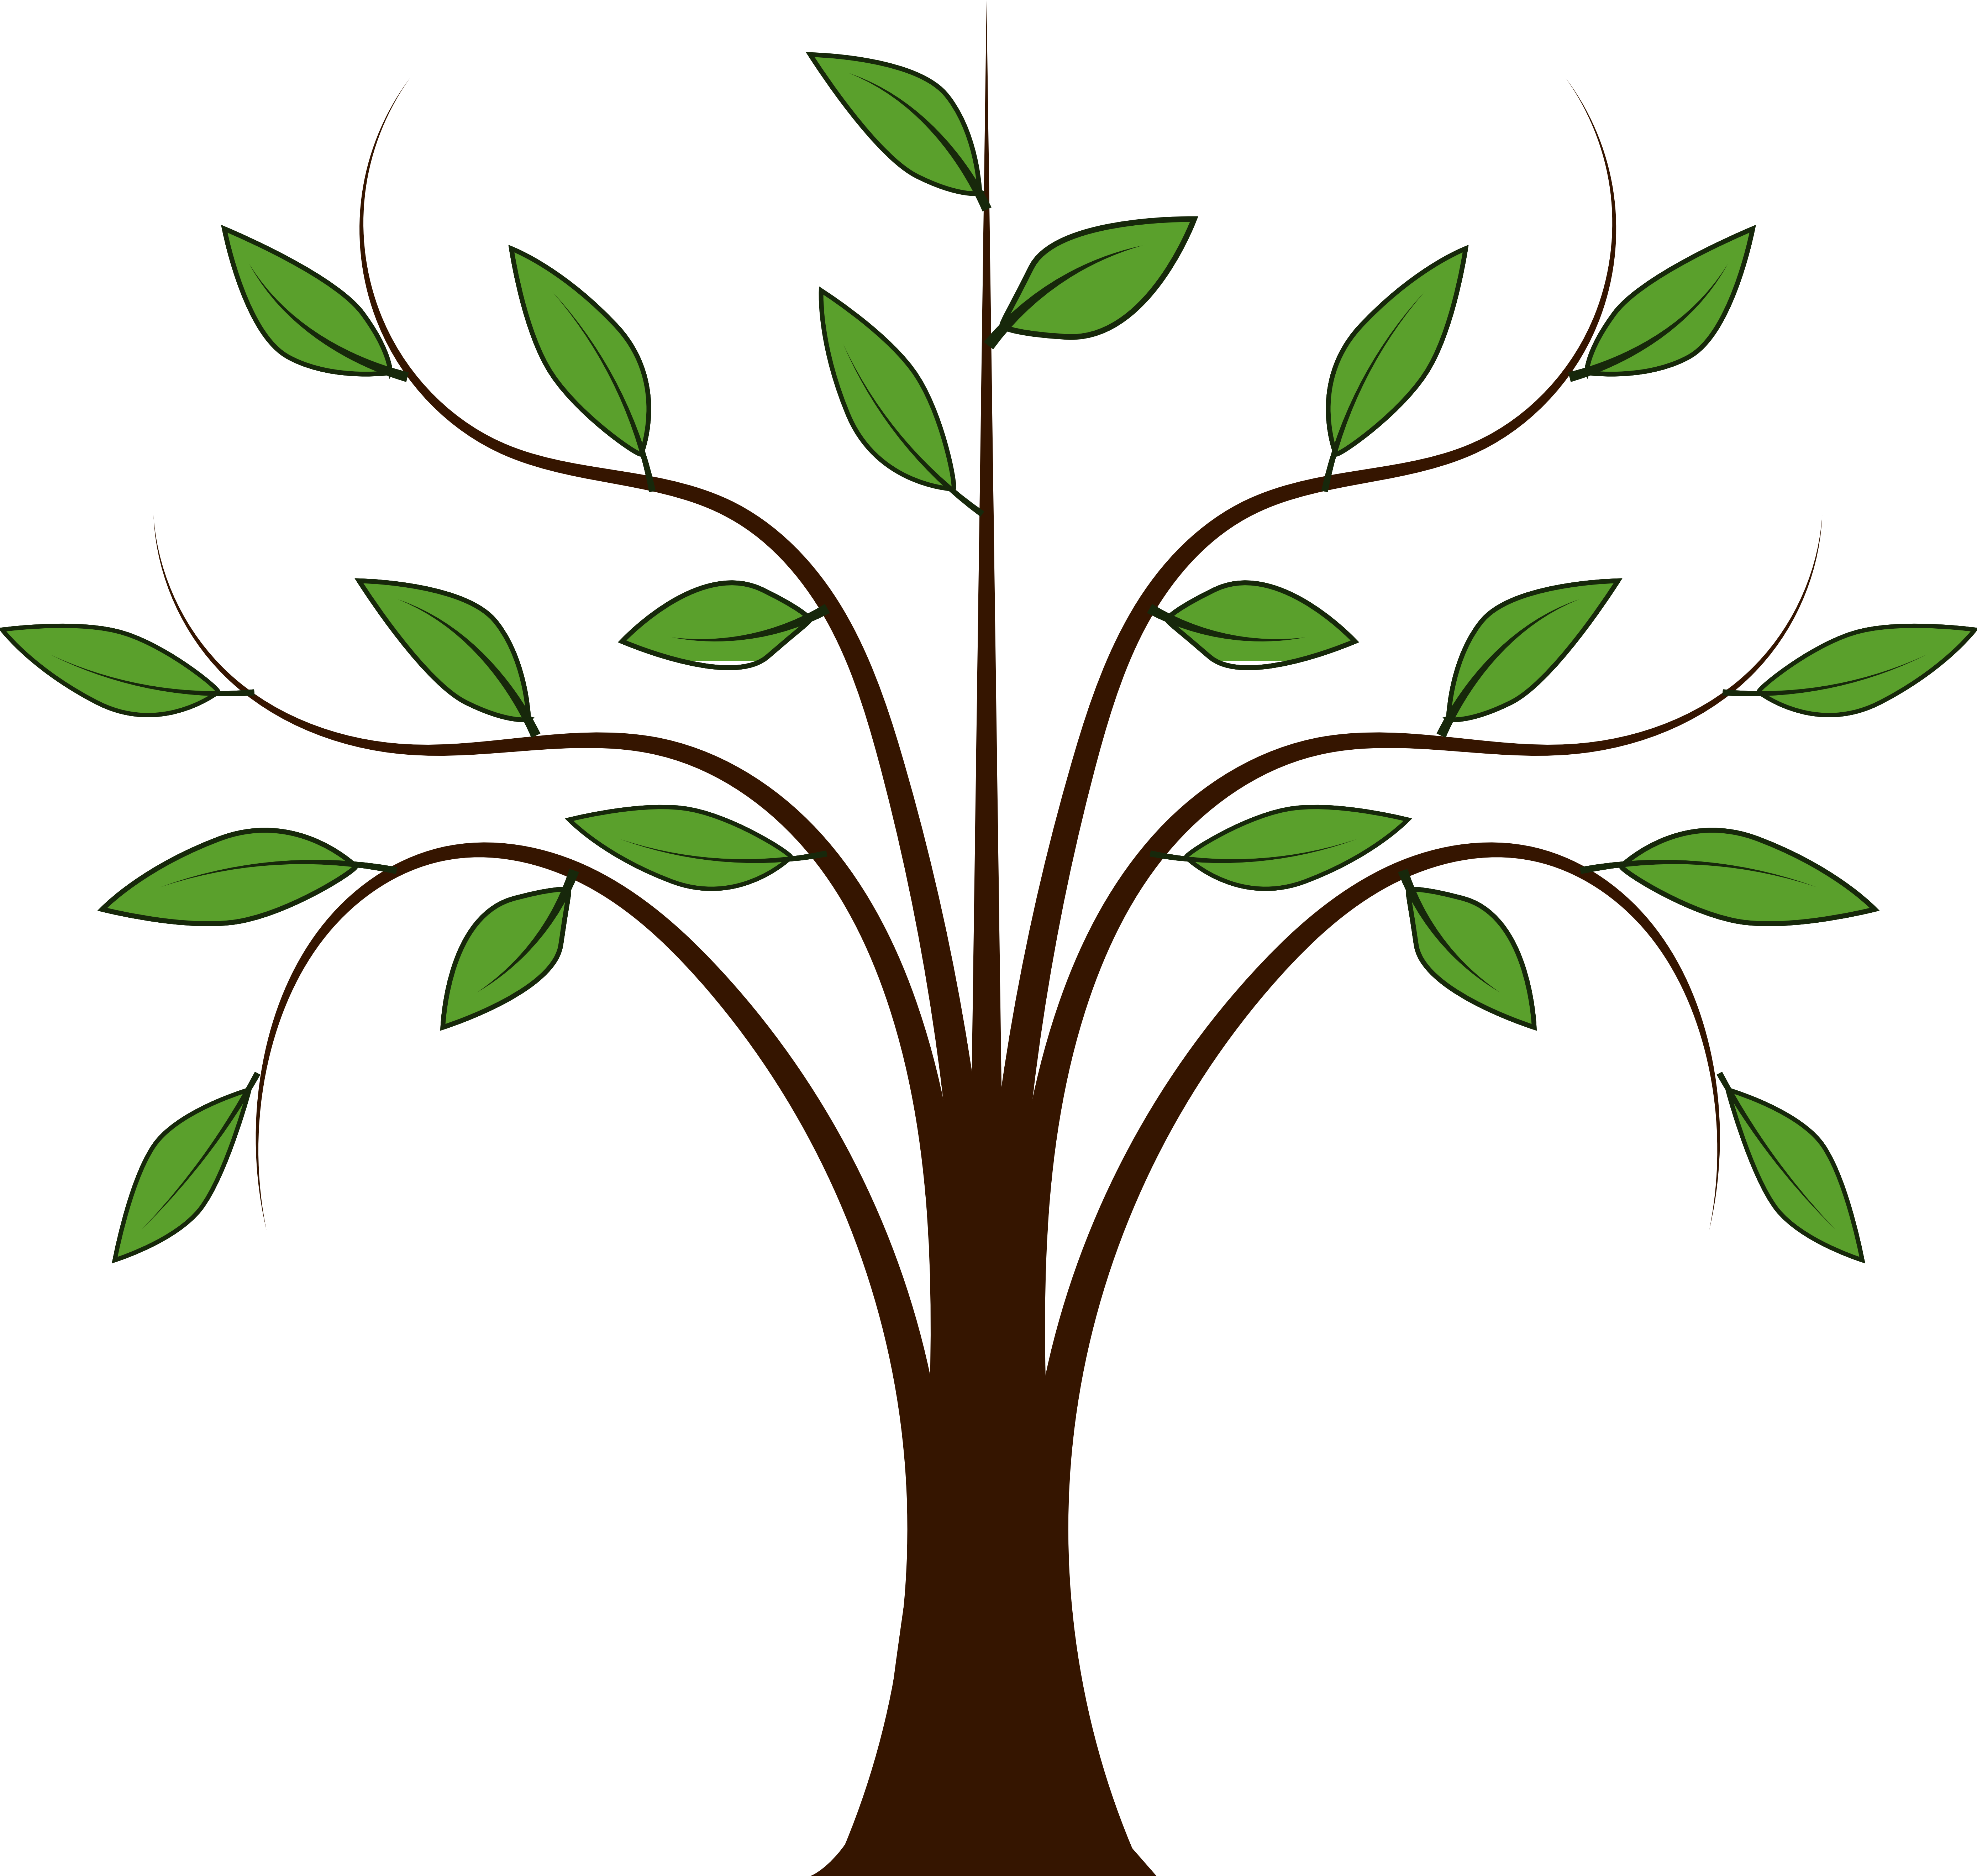 Trees family tree.